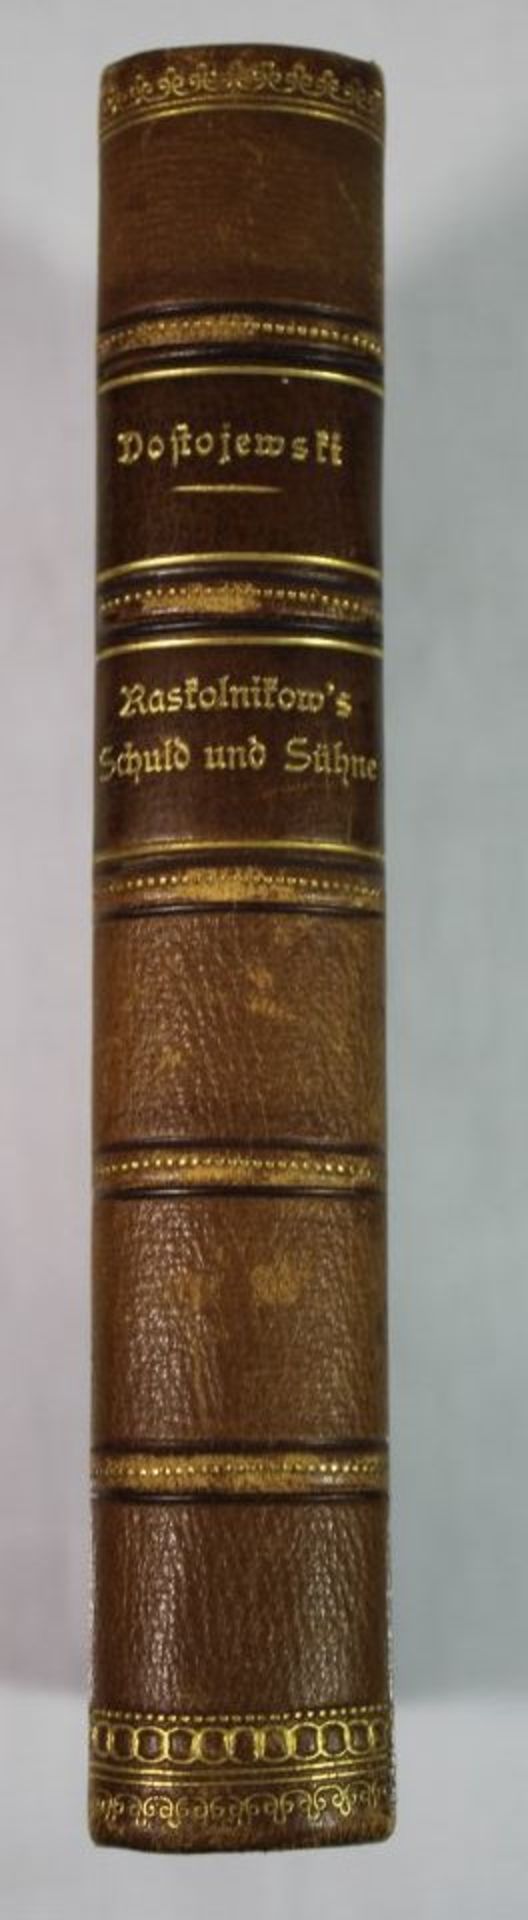 Raskolnikow's Schuld und Sühne, Dostojewski, um 1900.- - -22.61 % buyer's premium on the hammer